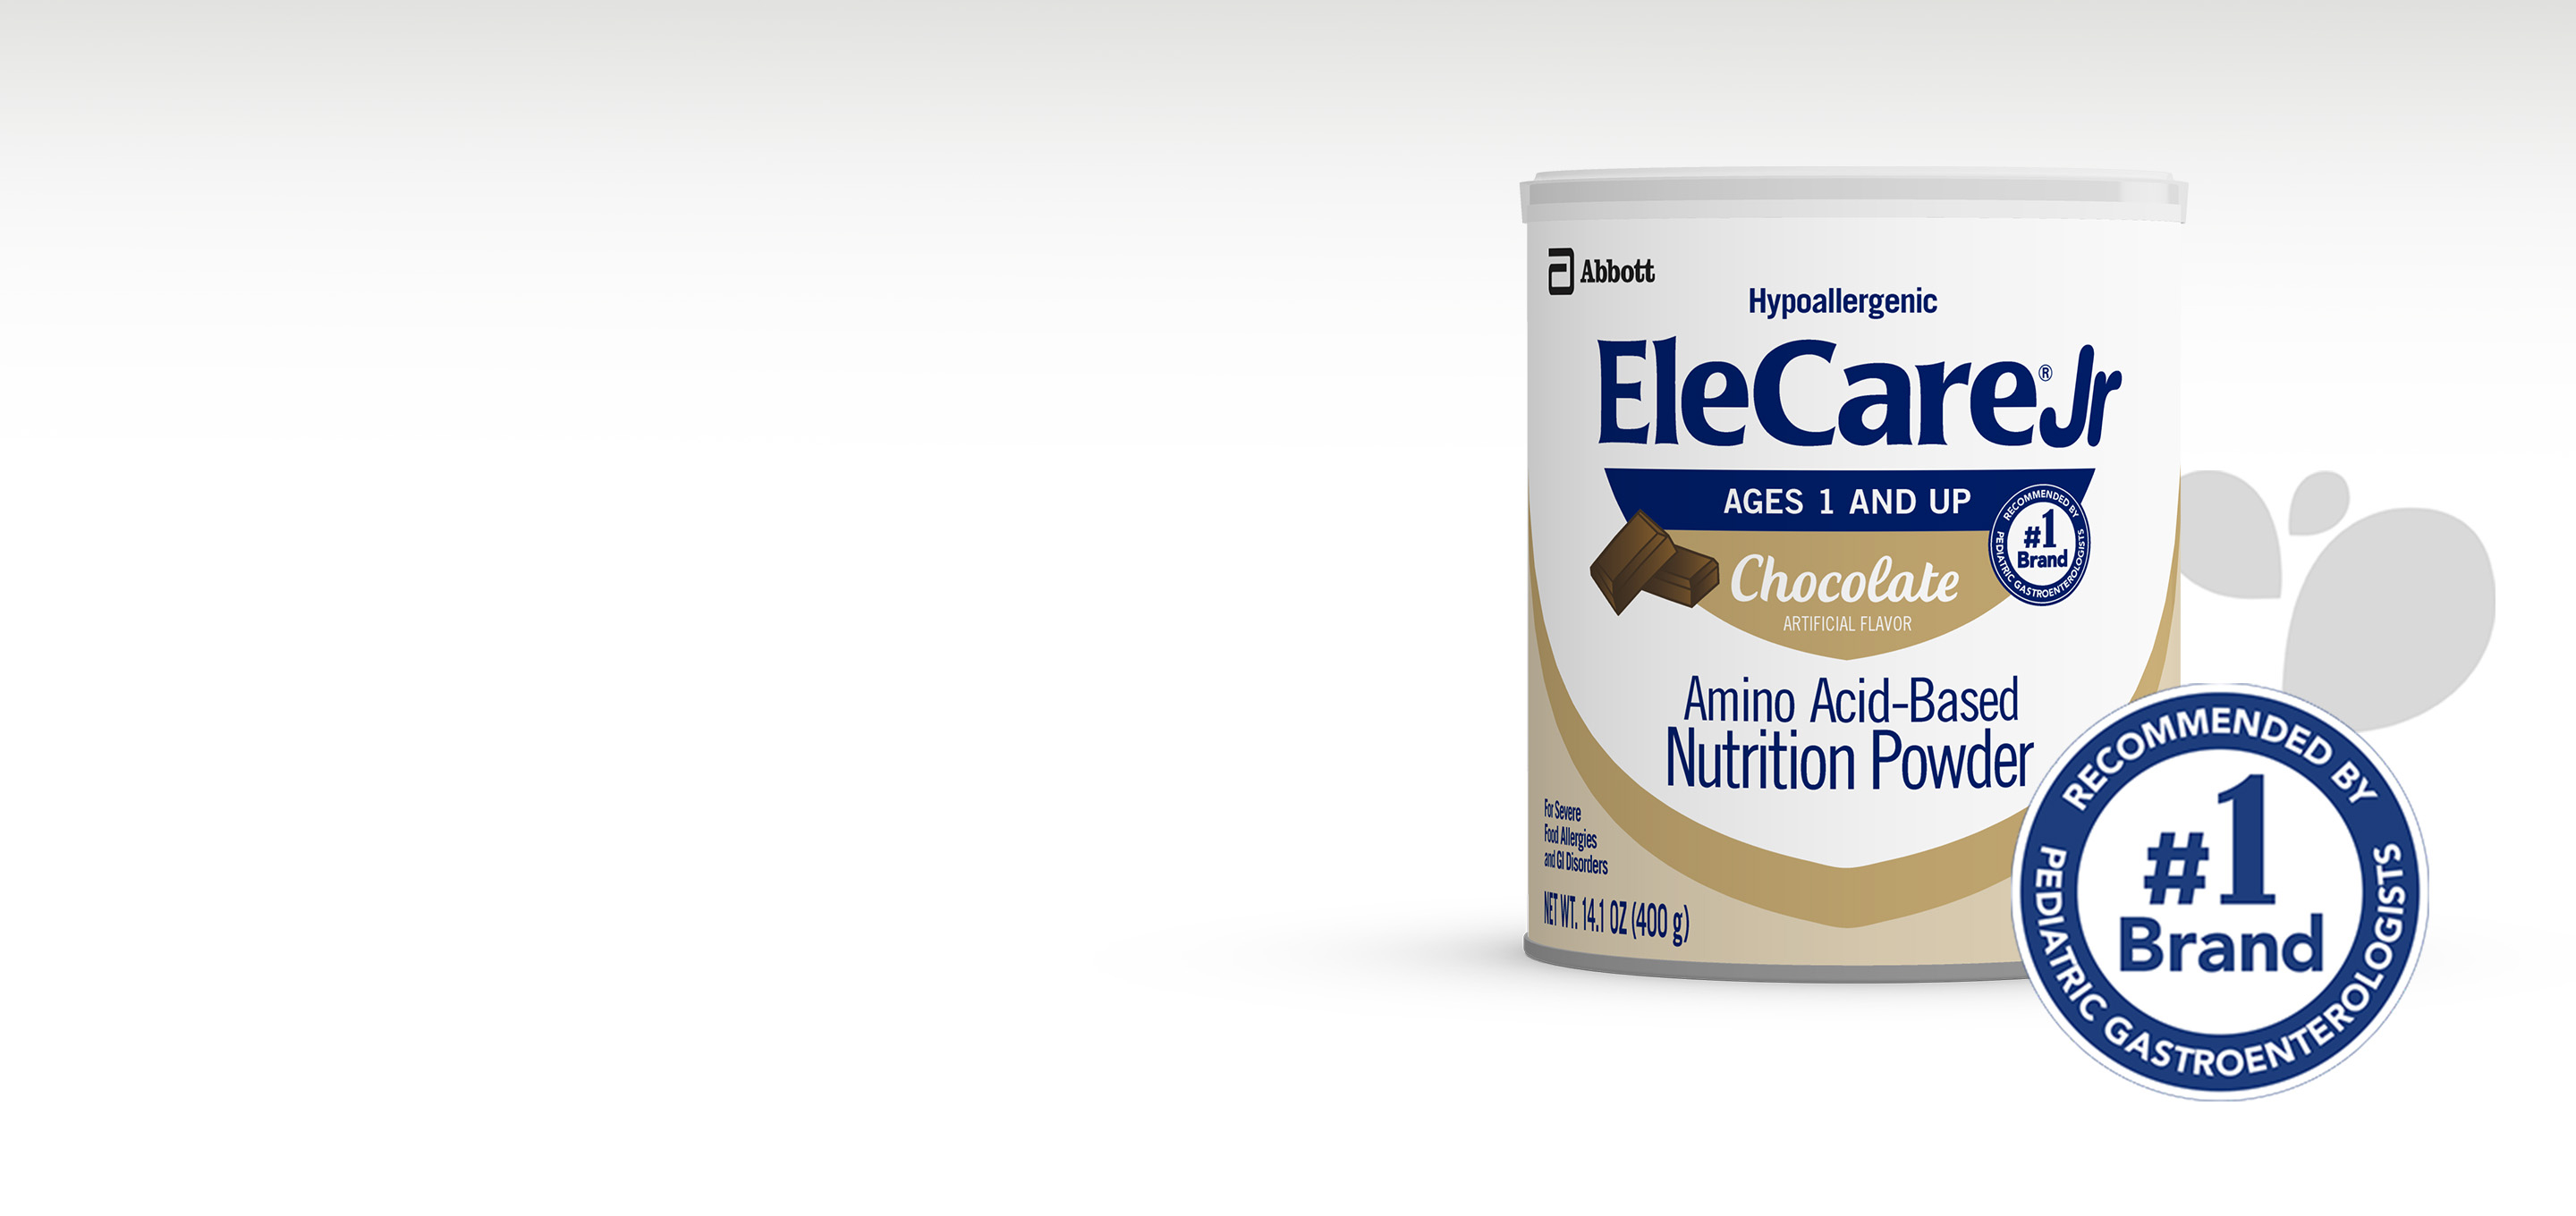 Elecare-Jr-Chocolate